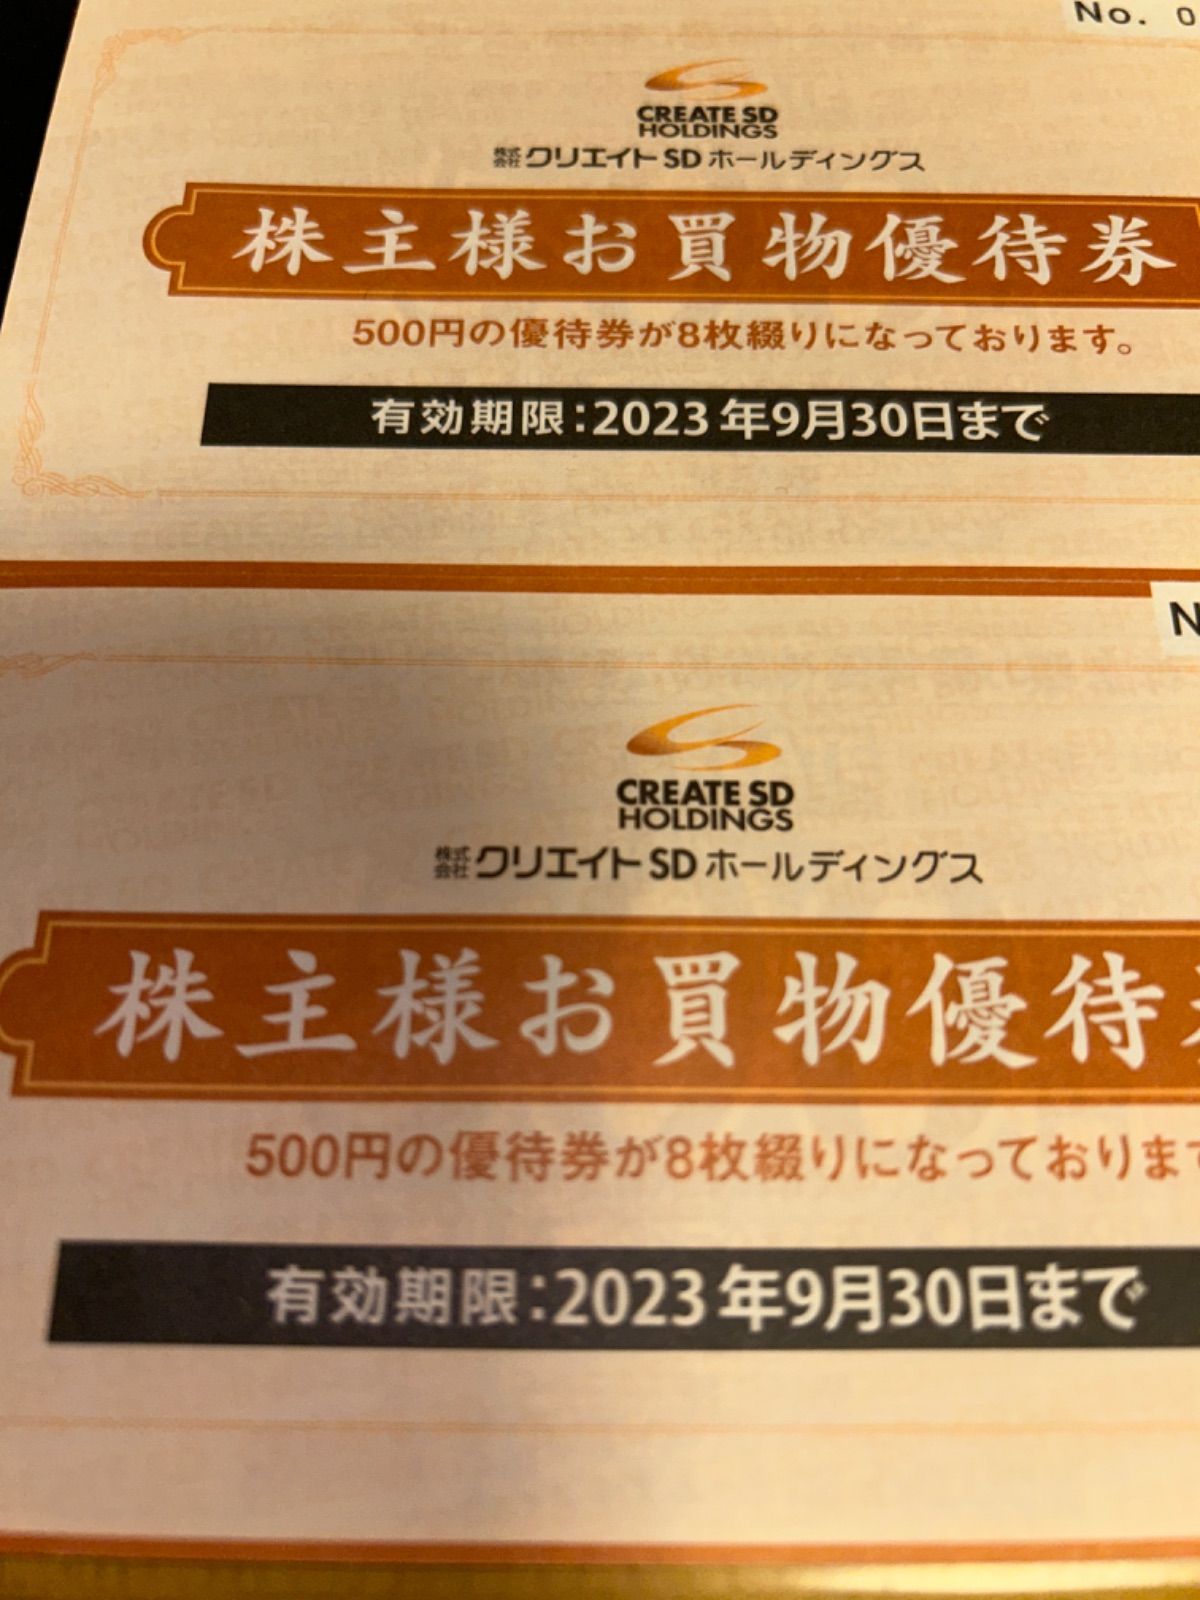 クリエイトSD株主優待券8000円 - ユウタイショップ - メルカリ